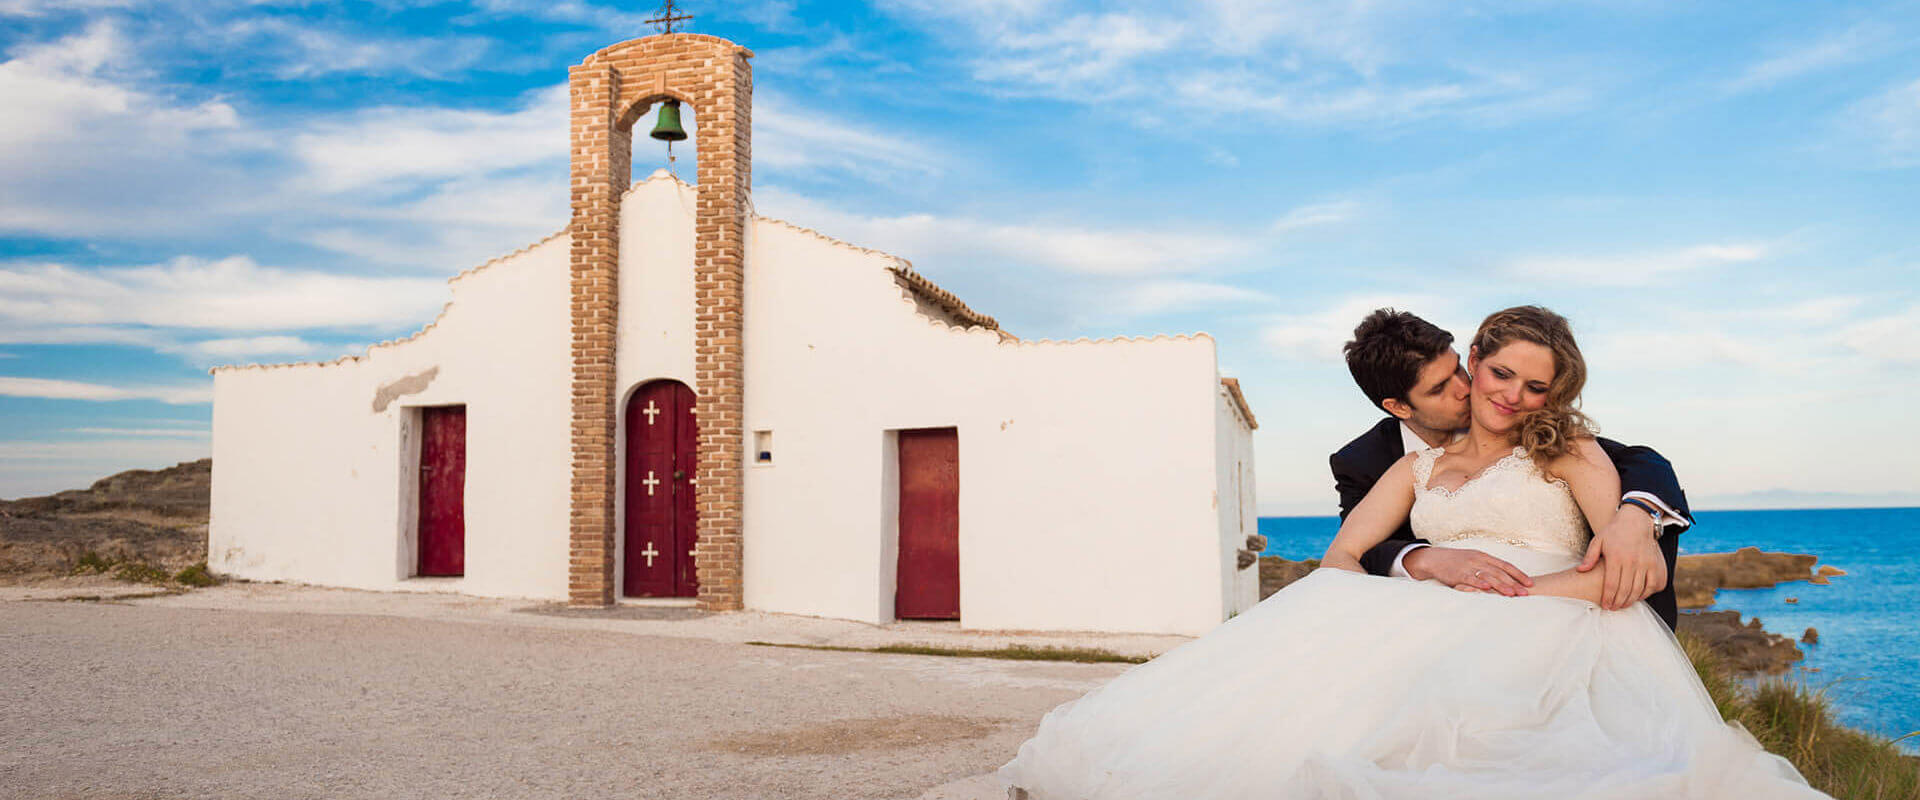 Wedding & Honeymoon Villas in Zakynthos Greece